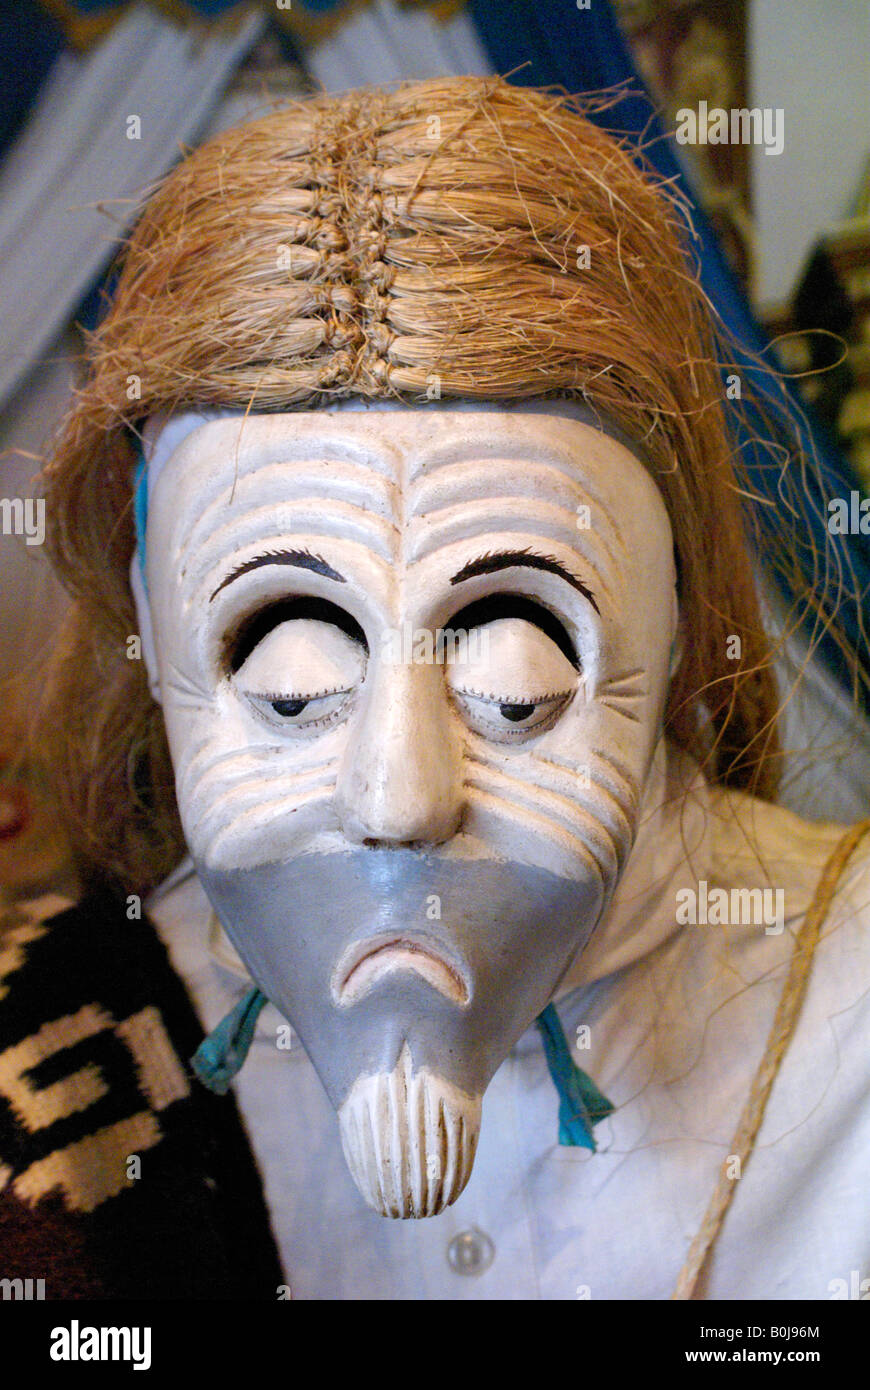 Viejito ou vieil homme masque à partir de l'état de Michoacan, Musée National d'anthropologie de parc de Chapultepec, Mexico Banque D'Images